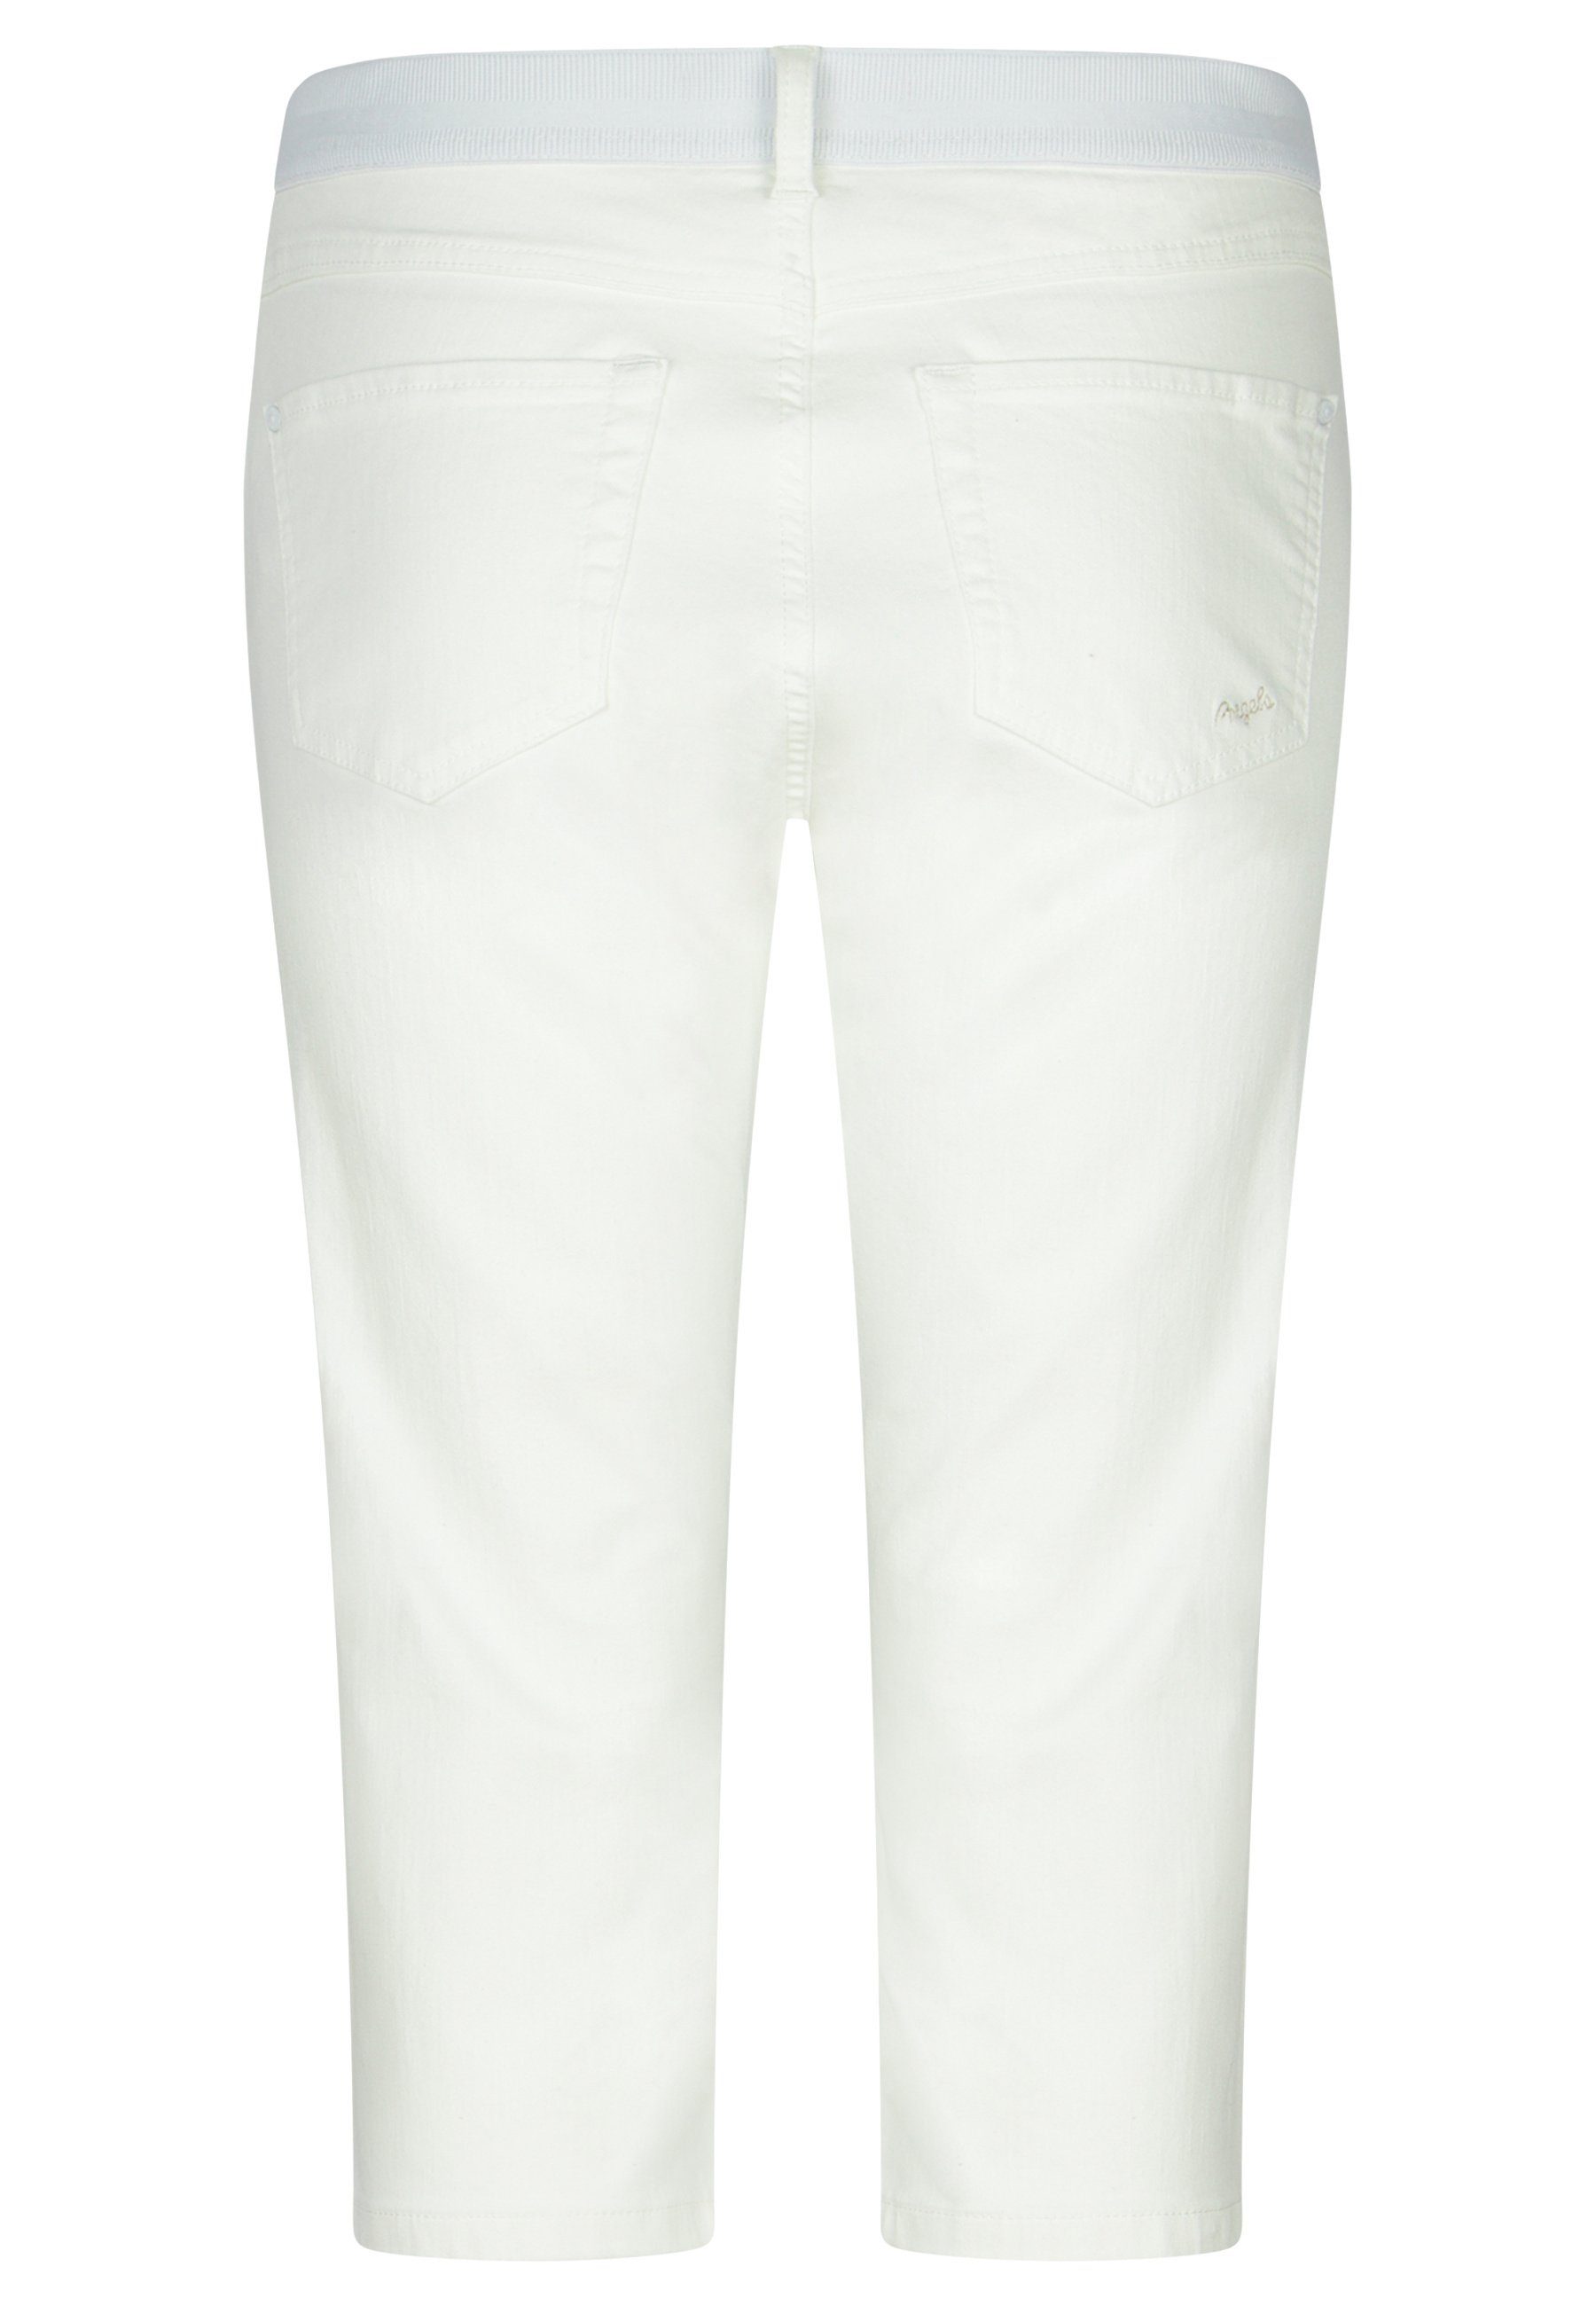 Kurze klassischem mit Design weiß Onesize Dehnbund-Jeans Capri Jeans ANGELS